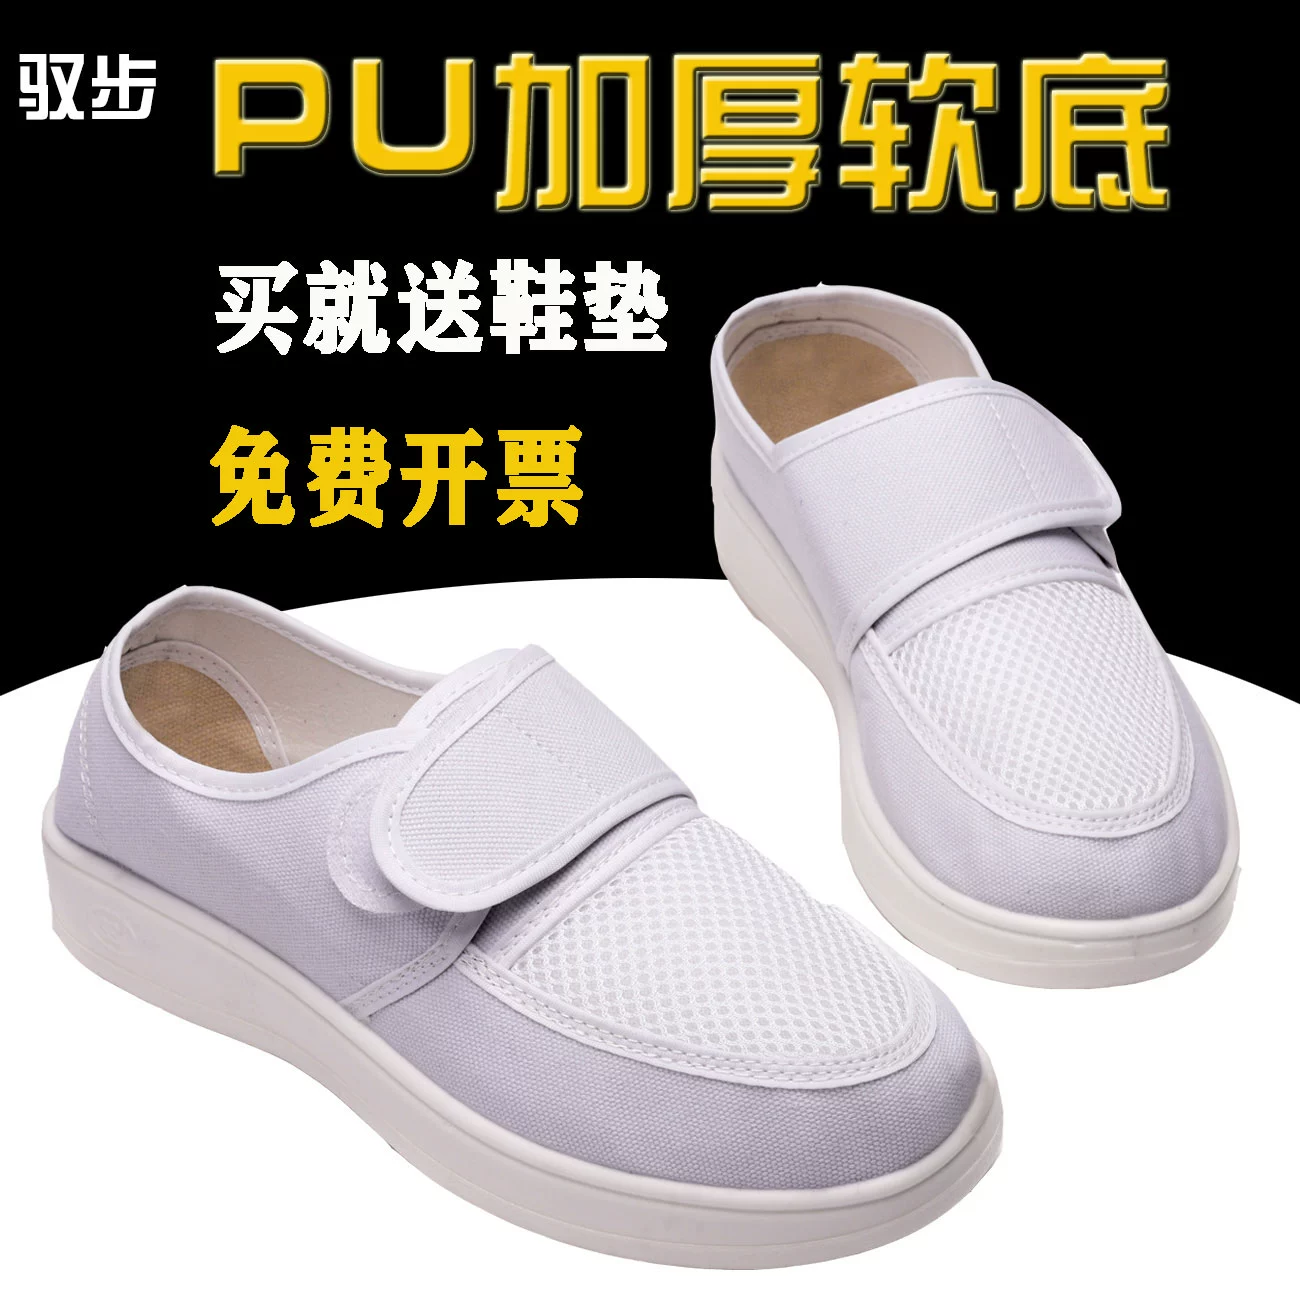 Yu bước giày chống tĩnh điện thở PU mềm đáy dày màu xanh M WTA bề mặt sàn nhà máy giày giày sạch giày công việc 